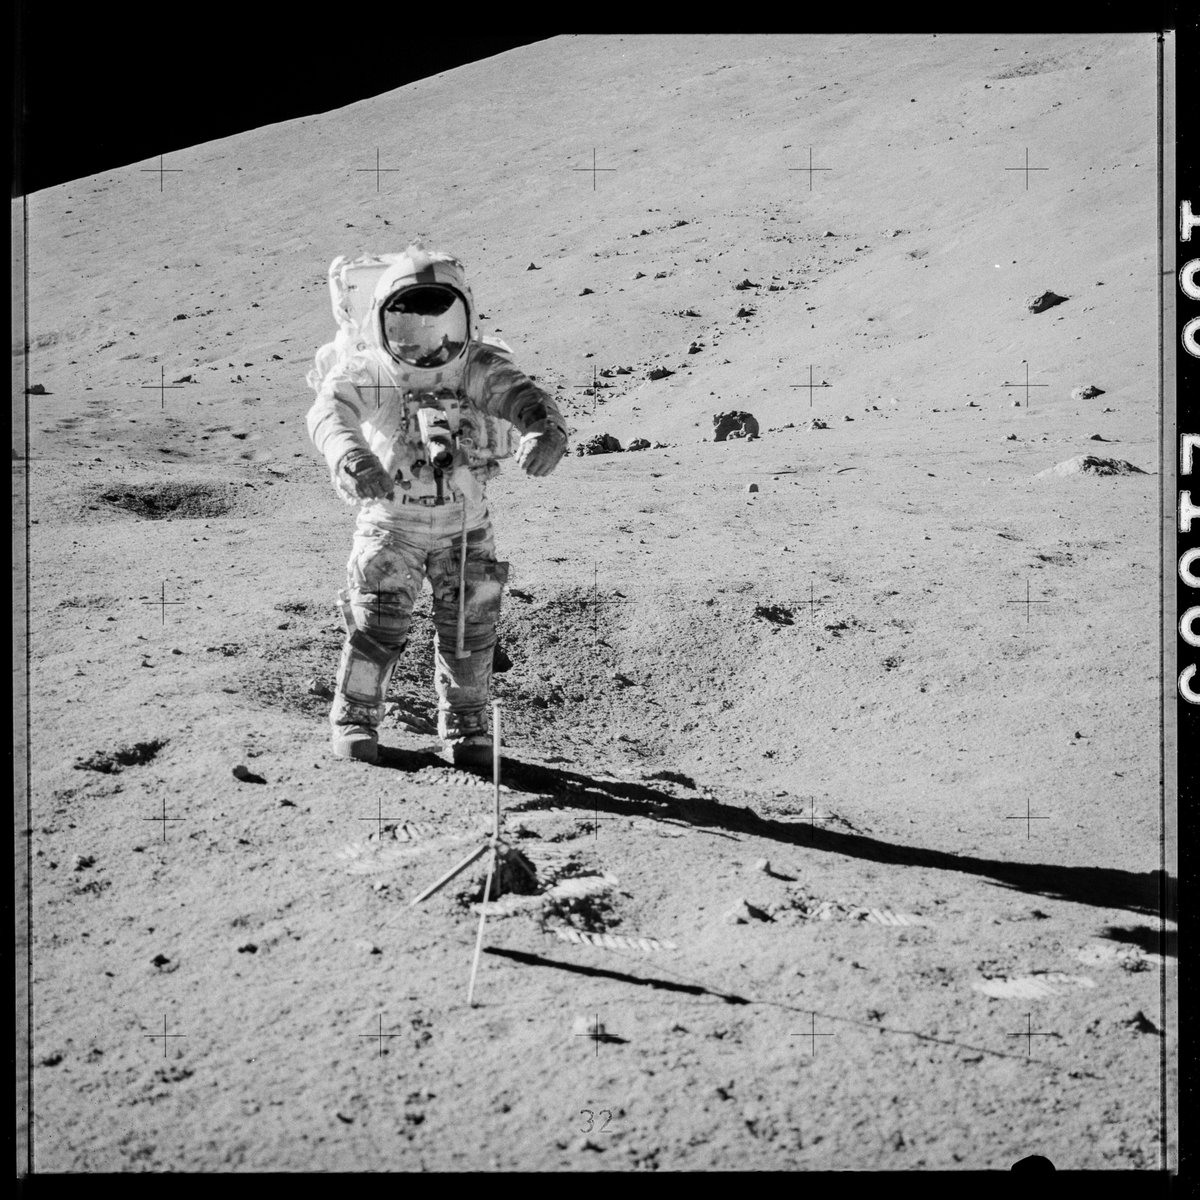 Apollo 17 échantillon